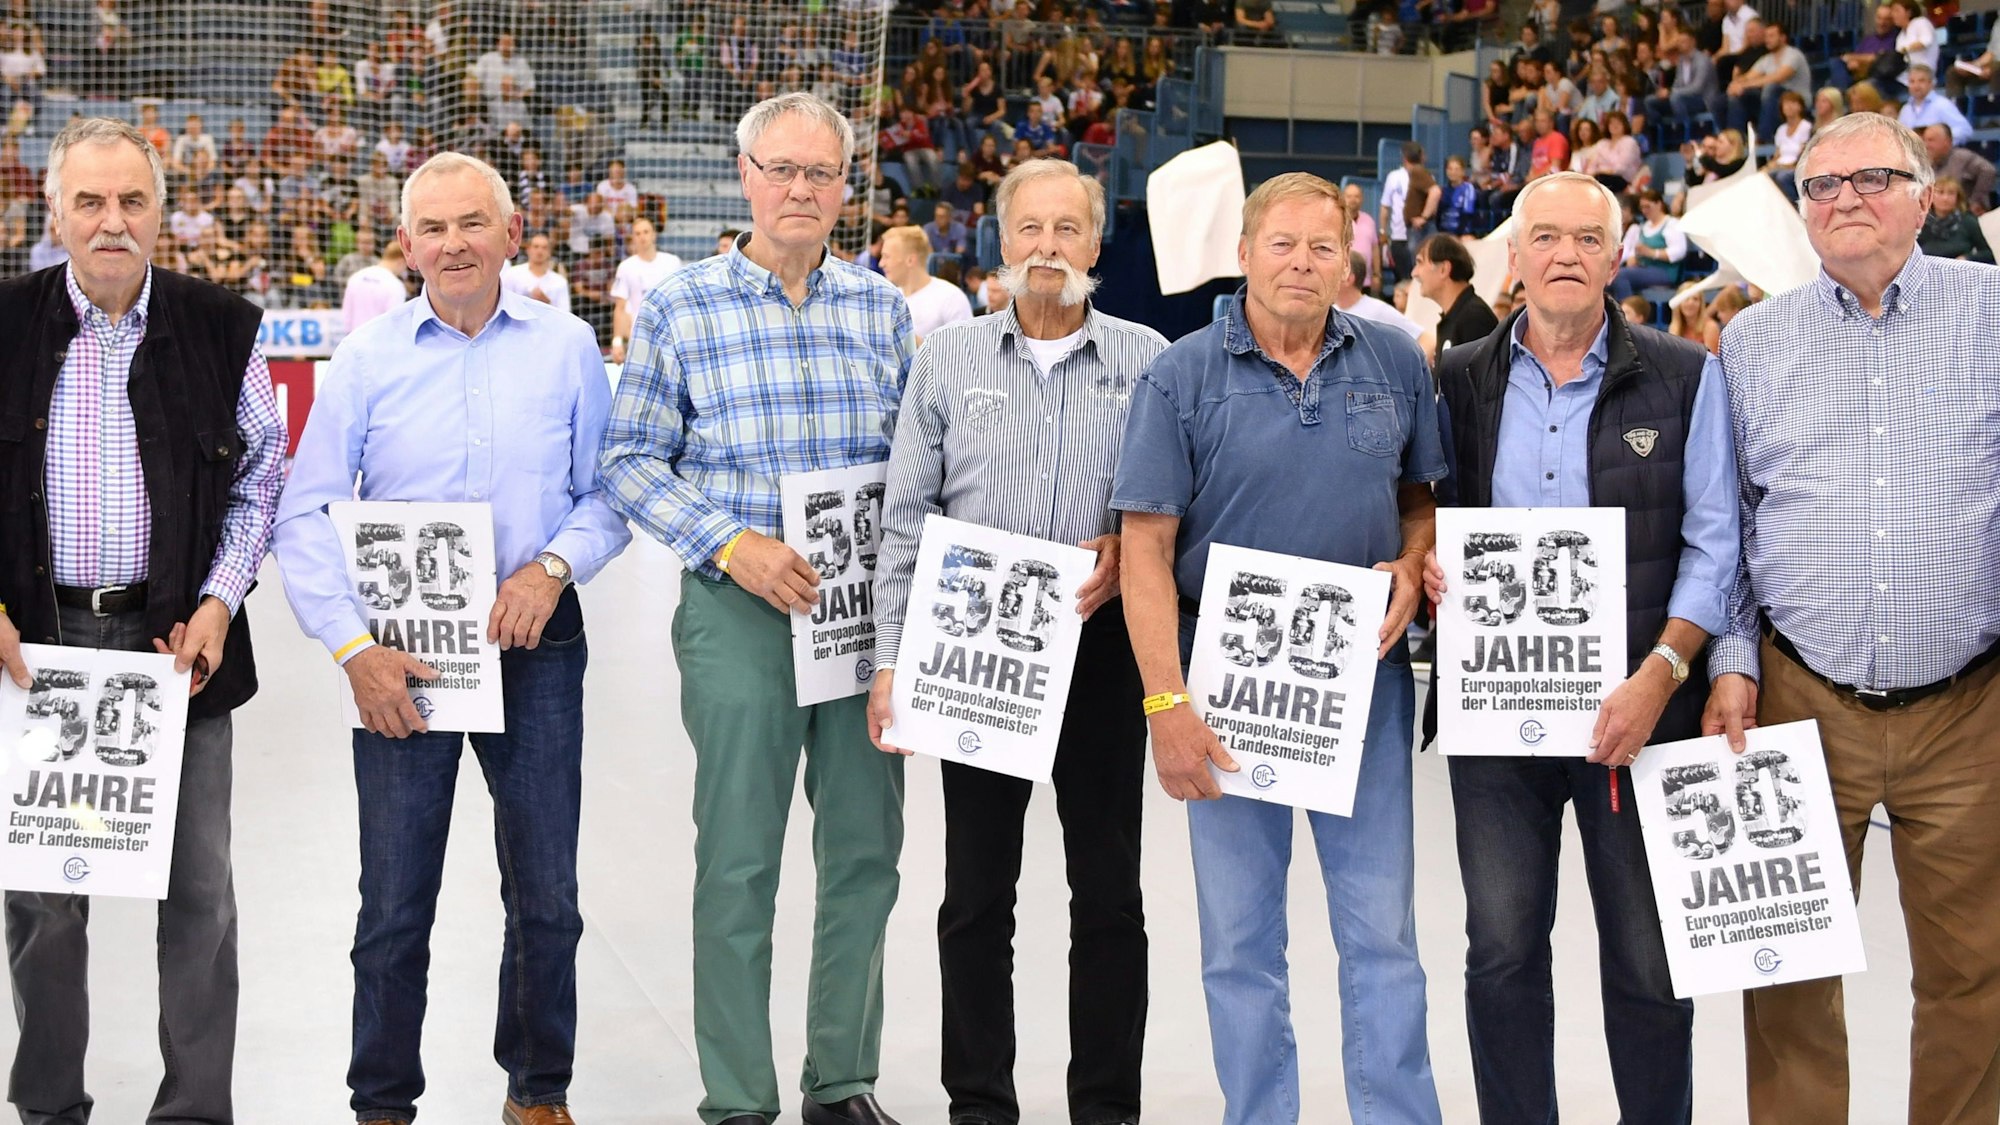 Mehrere Männer des VfL Gummersbach stehen nebeneinander. In den Händen halten sie die Chronik zum 50-jährigen Bestehen des VfL Gummersbach.